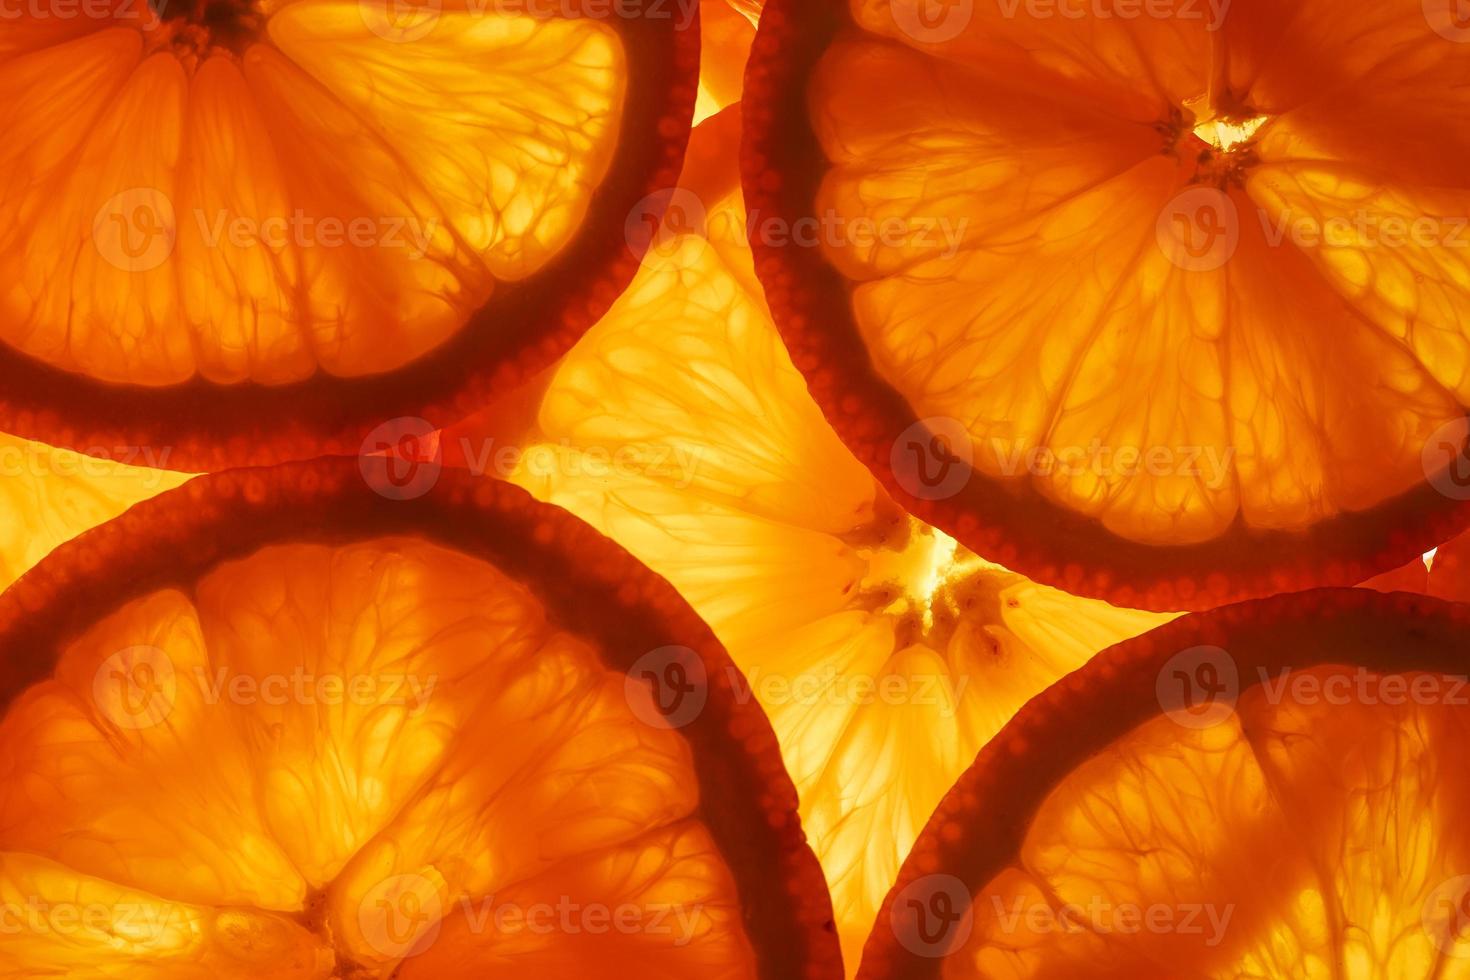 fatias de polpa e raspas de laranja madura com iluminação de fundo como fundo textural, o substrato. tela cheia, close-up foto